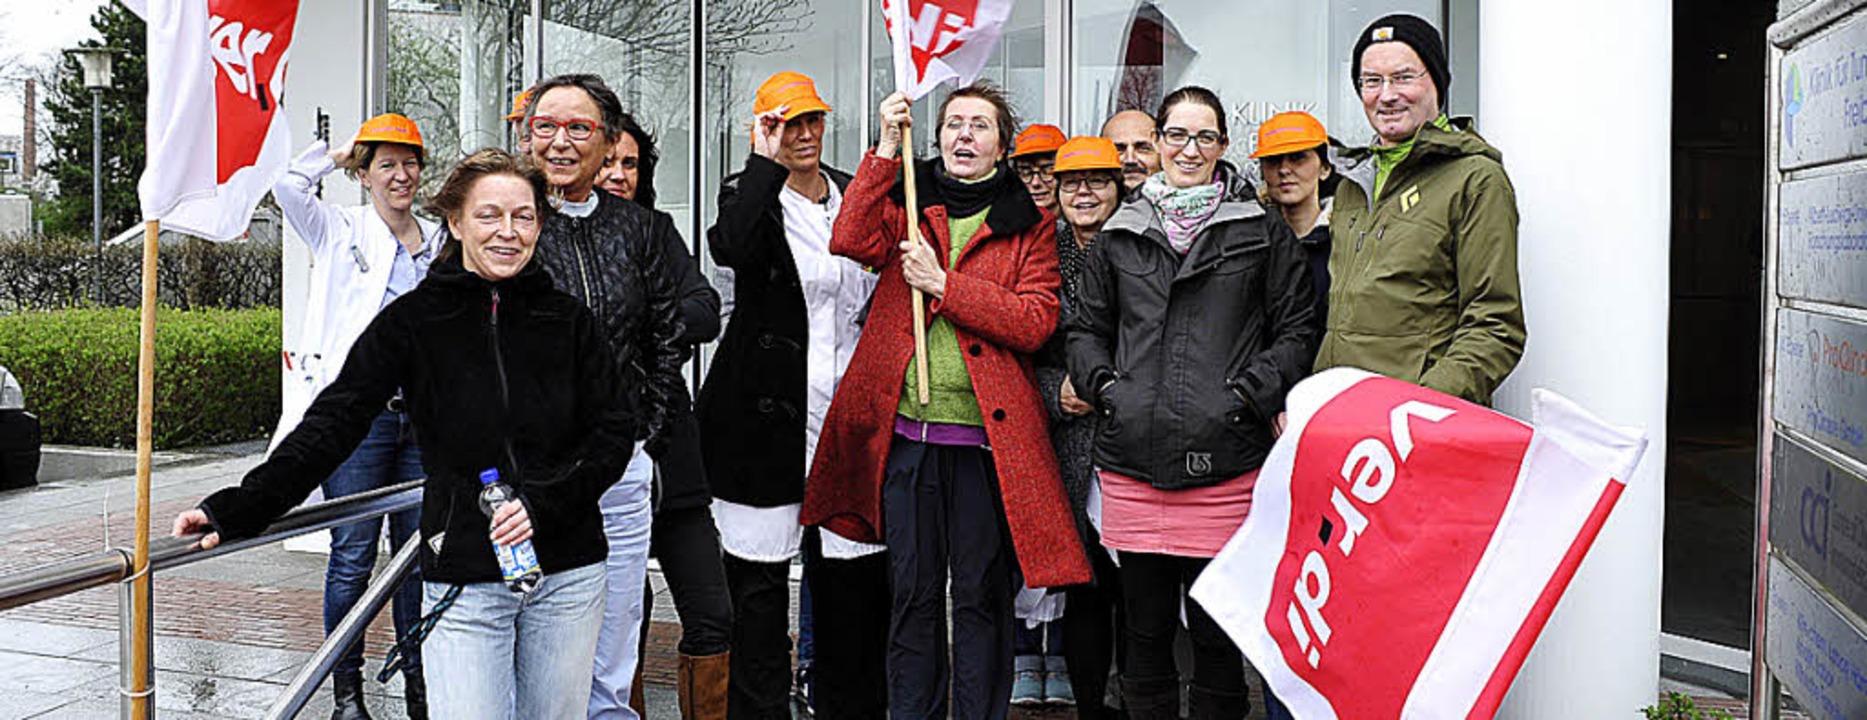 Sie fordern ihr Geld: Klinikbeschäftigte beim Protest.   | Foto: Thomas Kunz